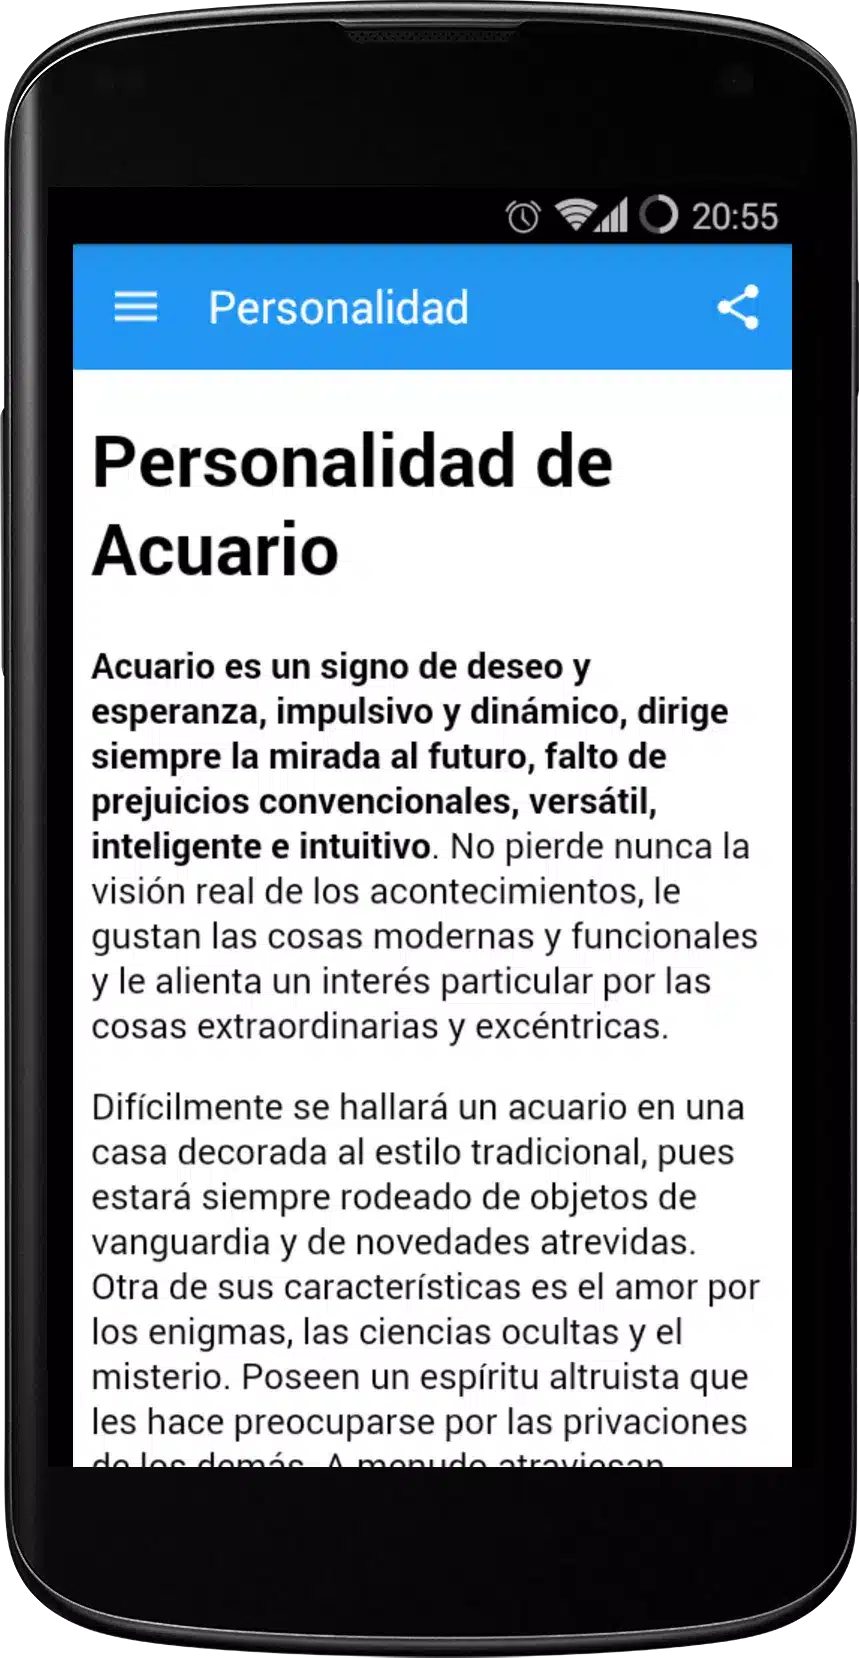 Horoscopo Acuario 2016 Image 4